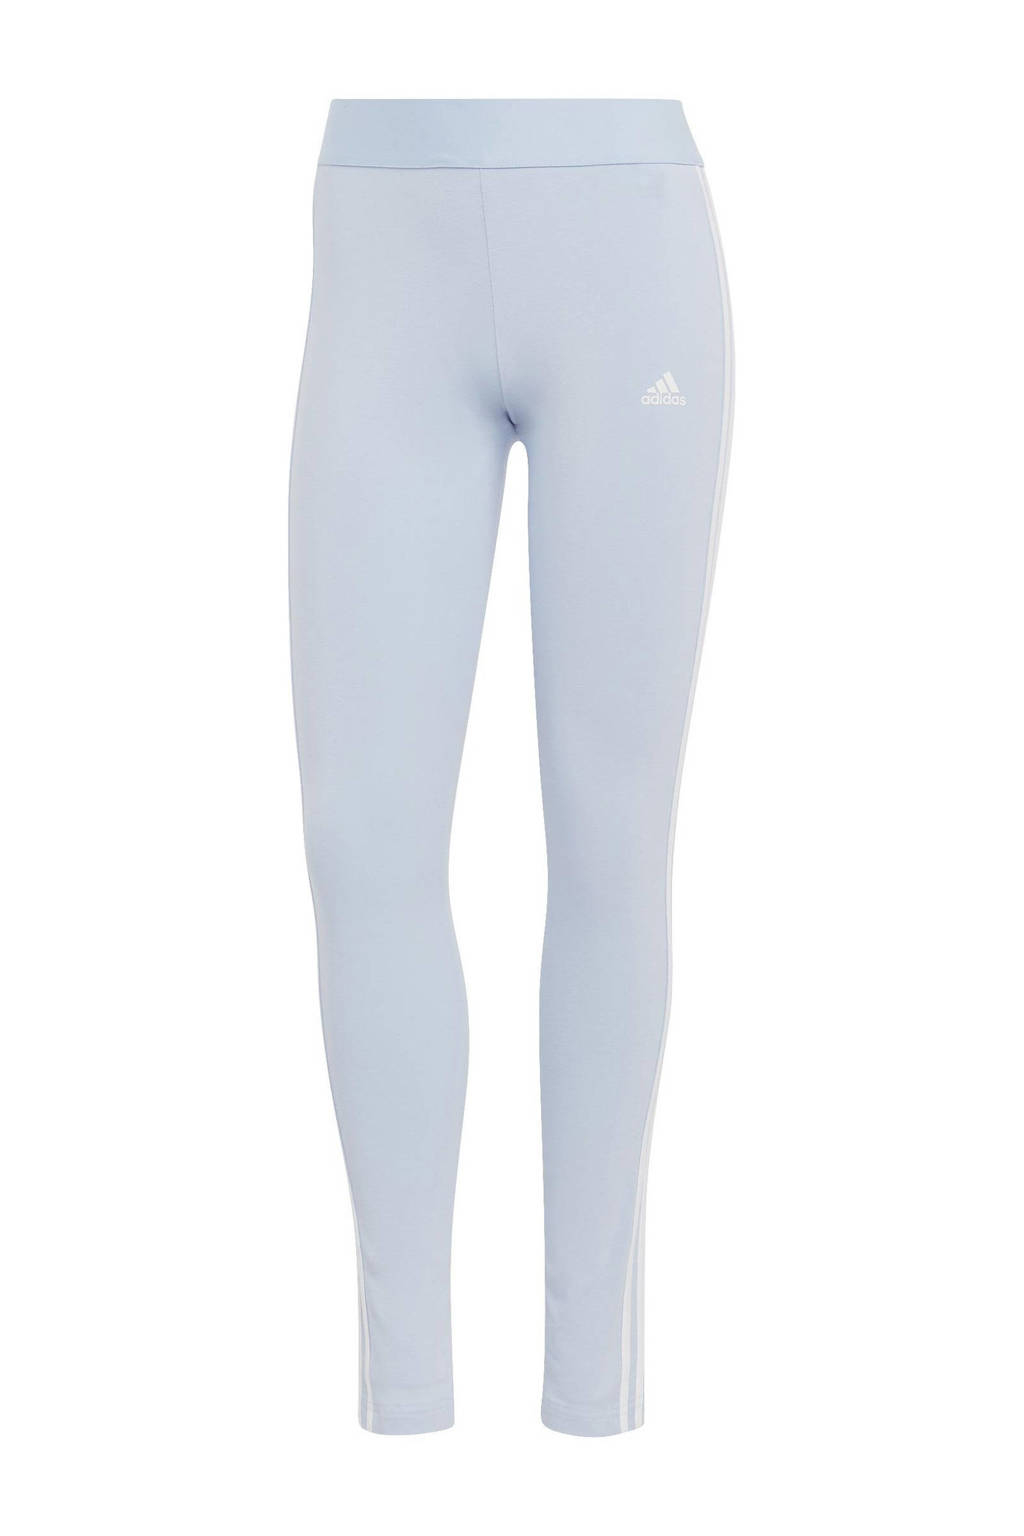 Aanleg Megalopolis verlegen adidas Sportswear legging lichtblauw | wehkamp